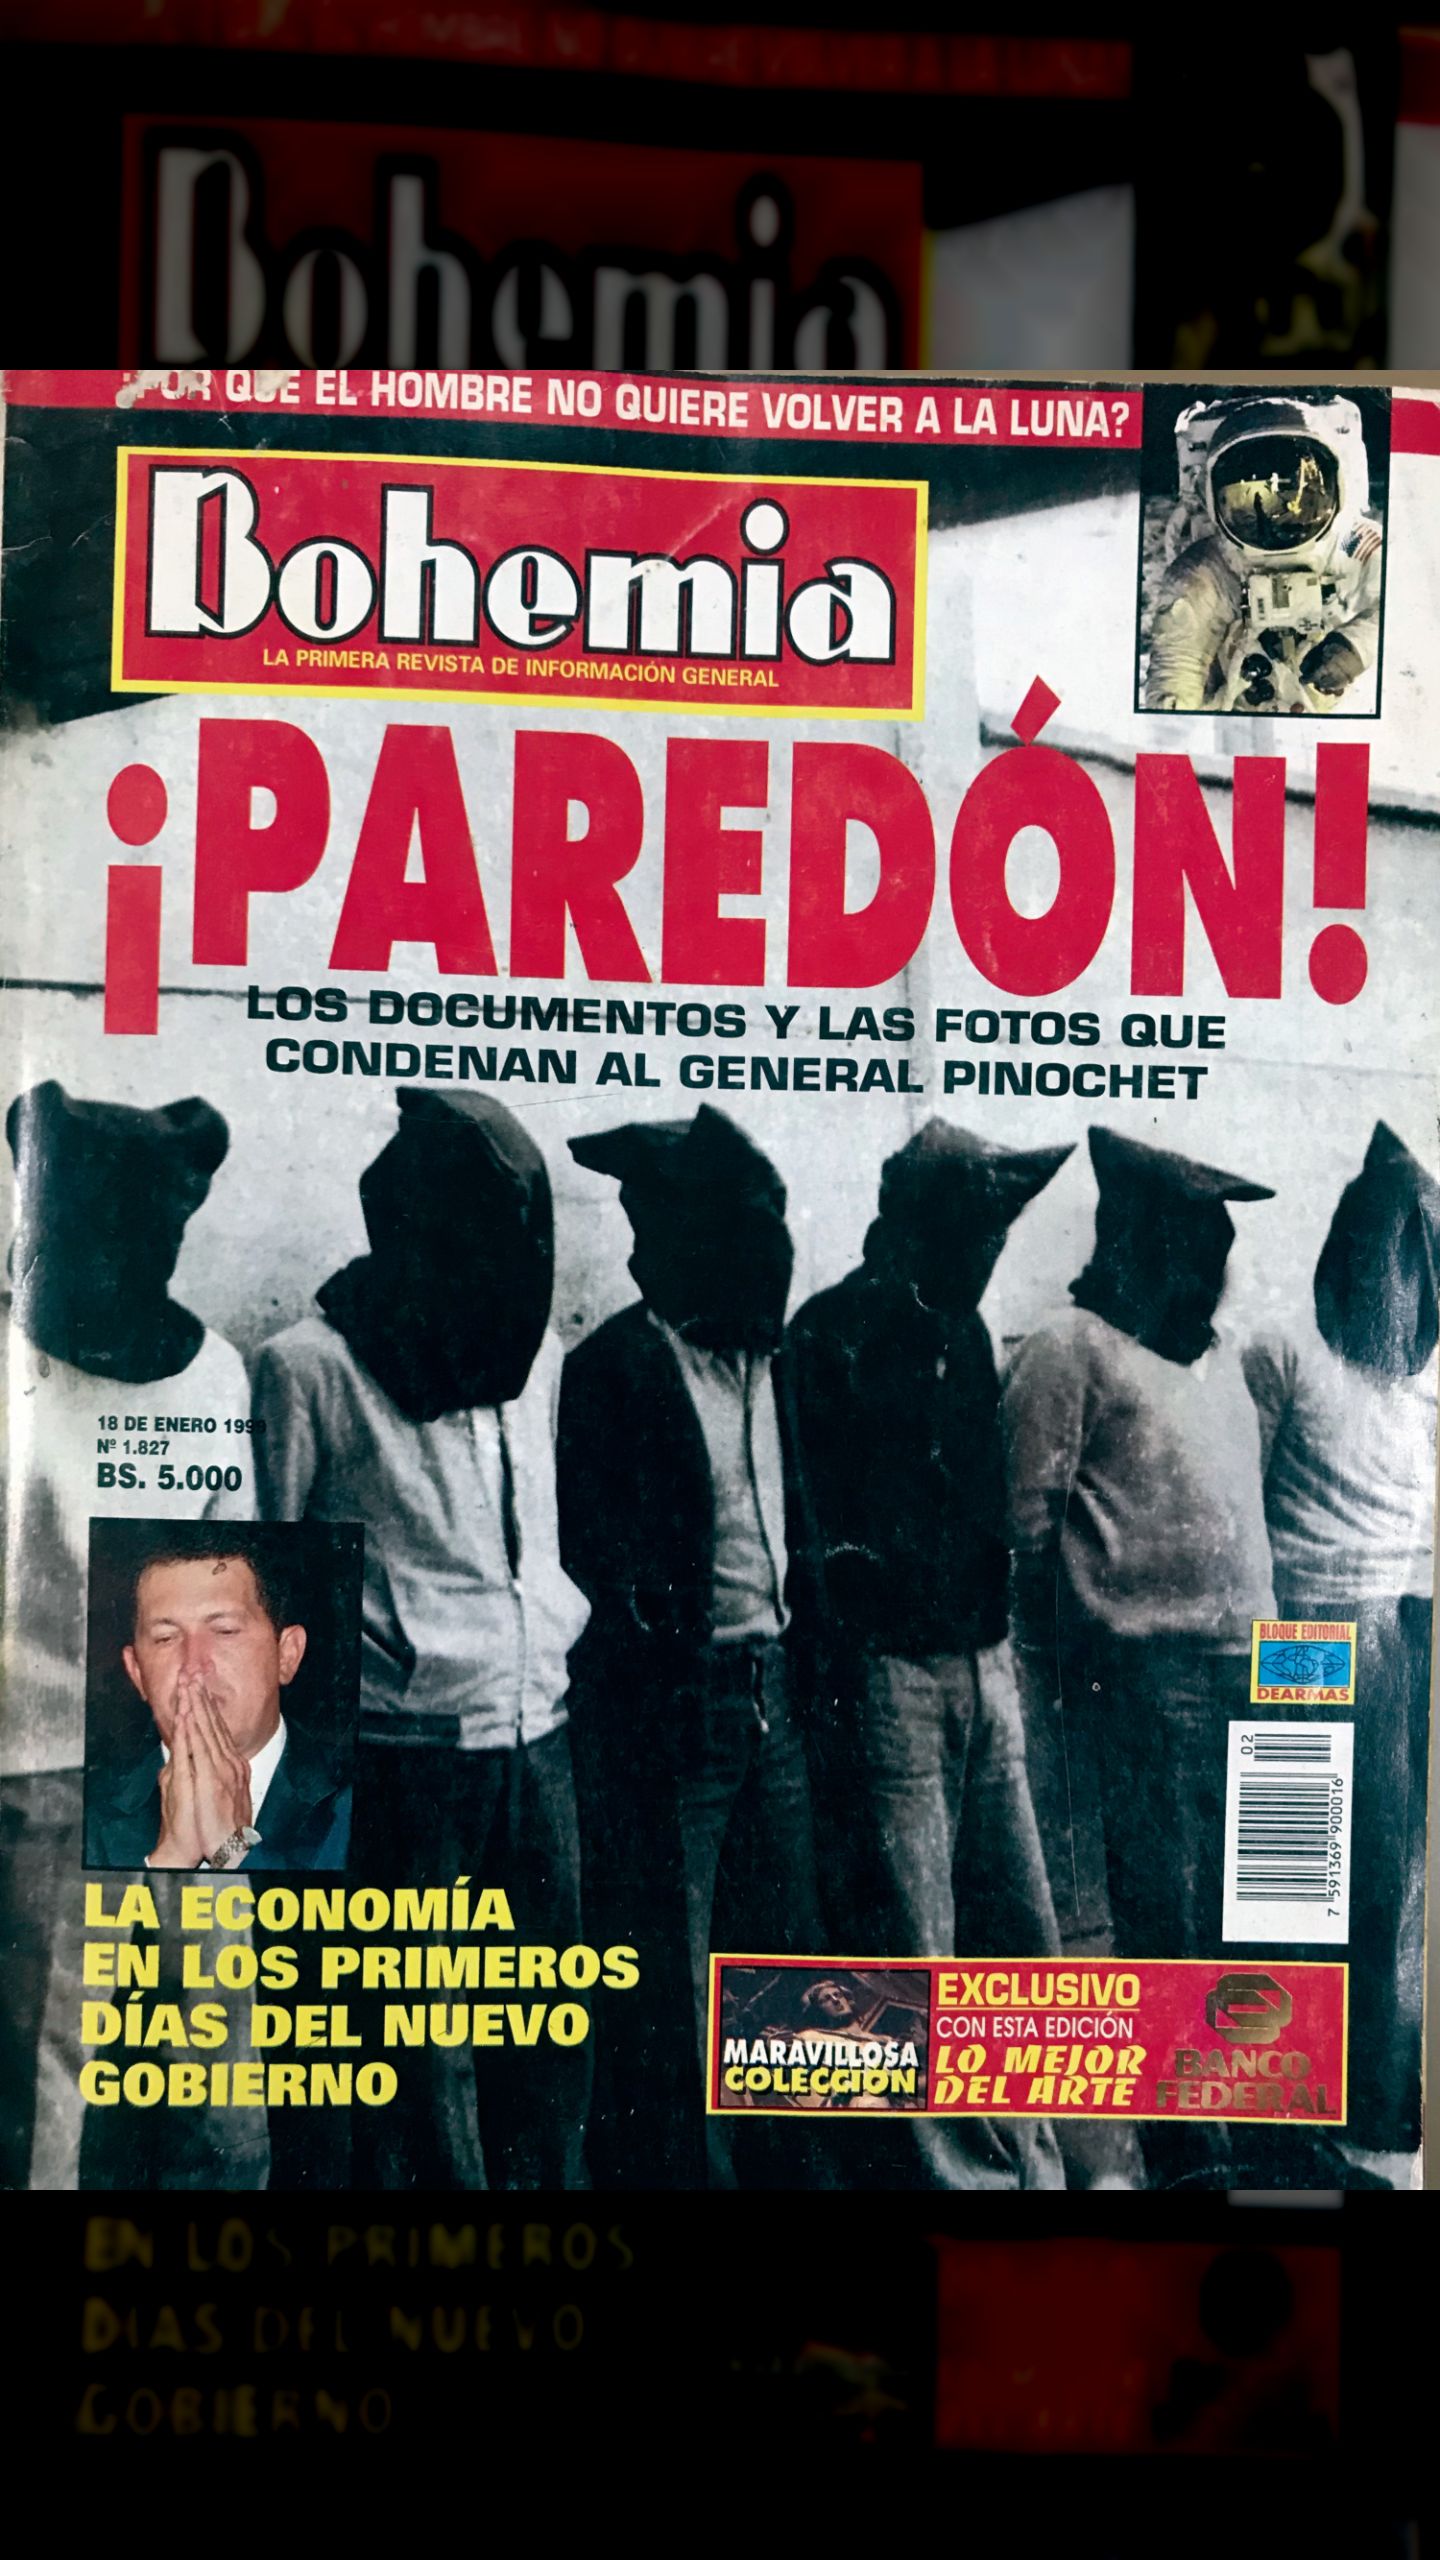 ¡Paredón! Los documentos y fotos que condenan al General Pinochet (Revista Bohemia, 16 de enero 1999)